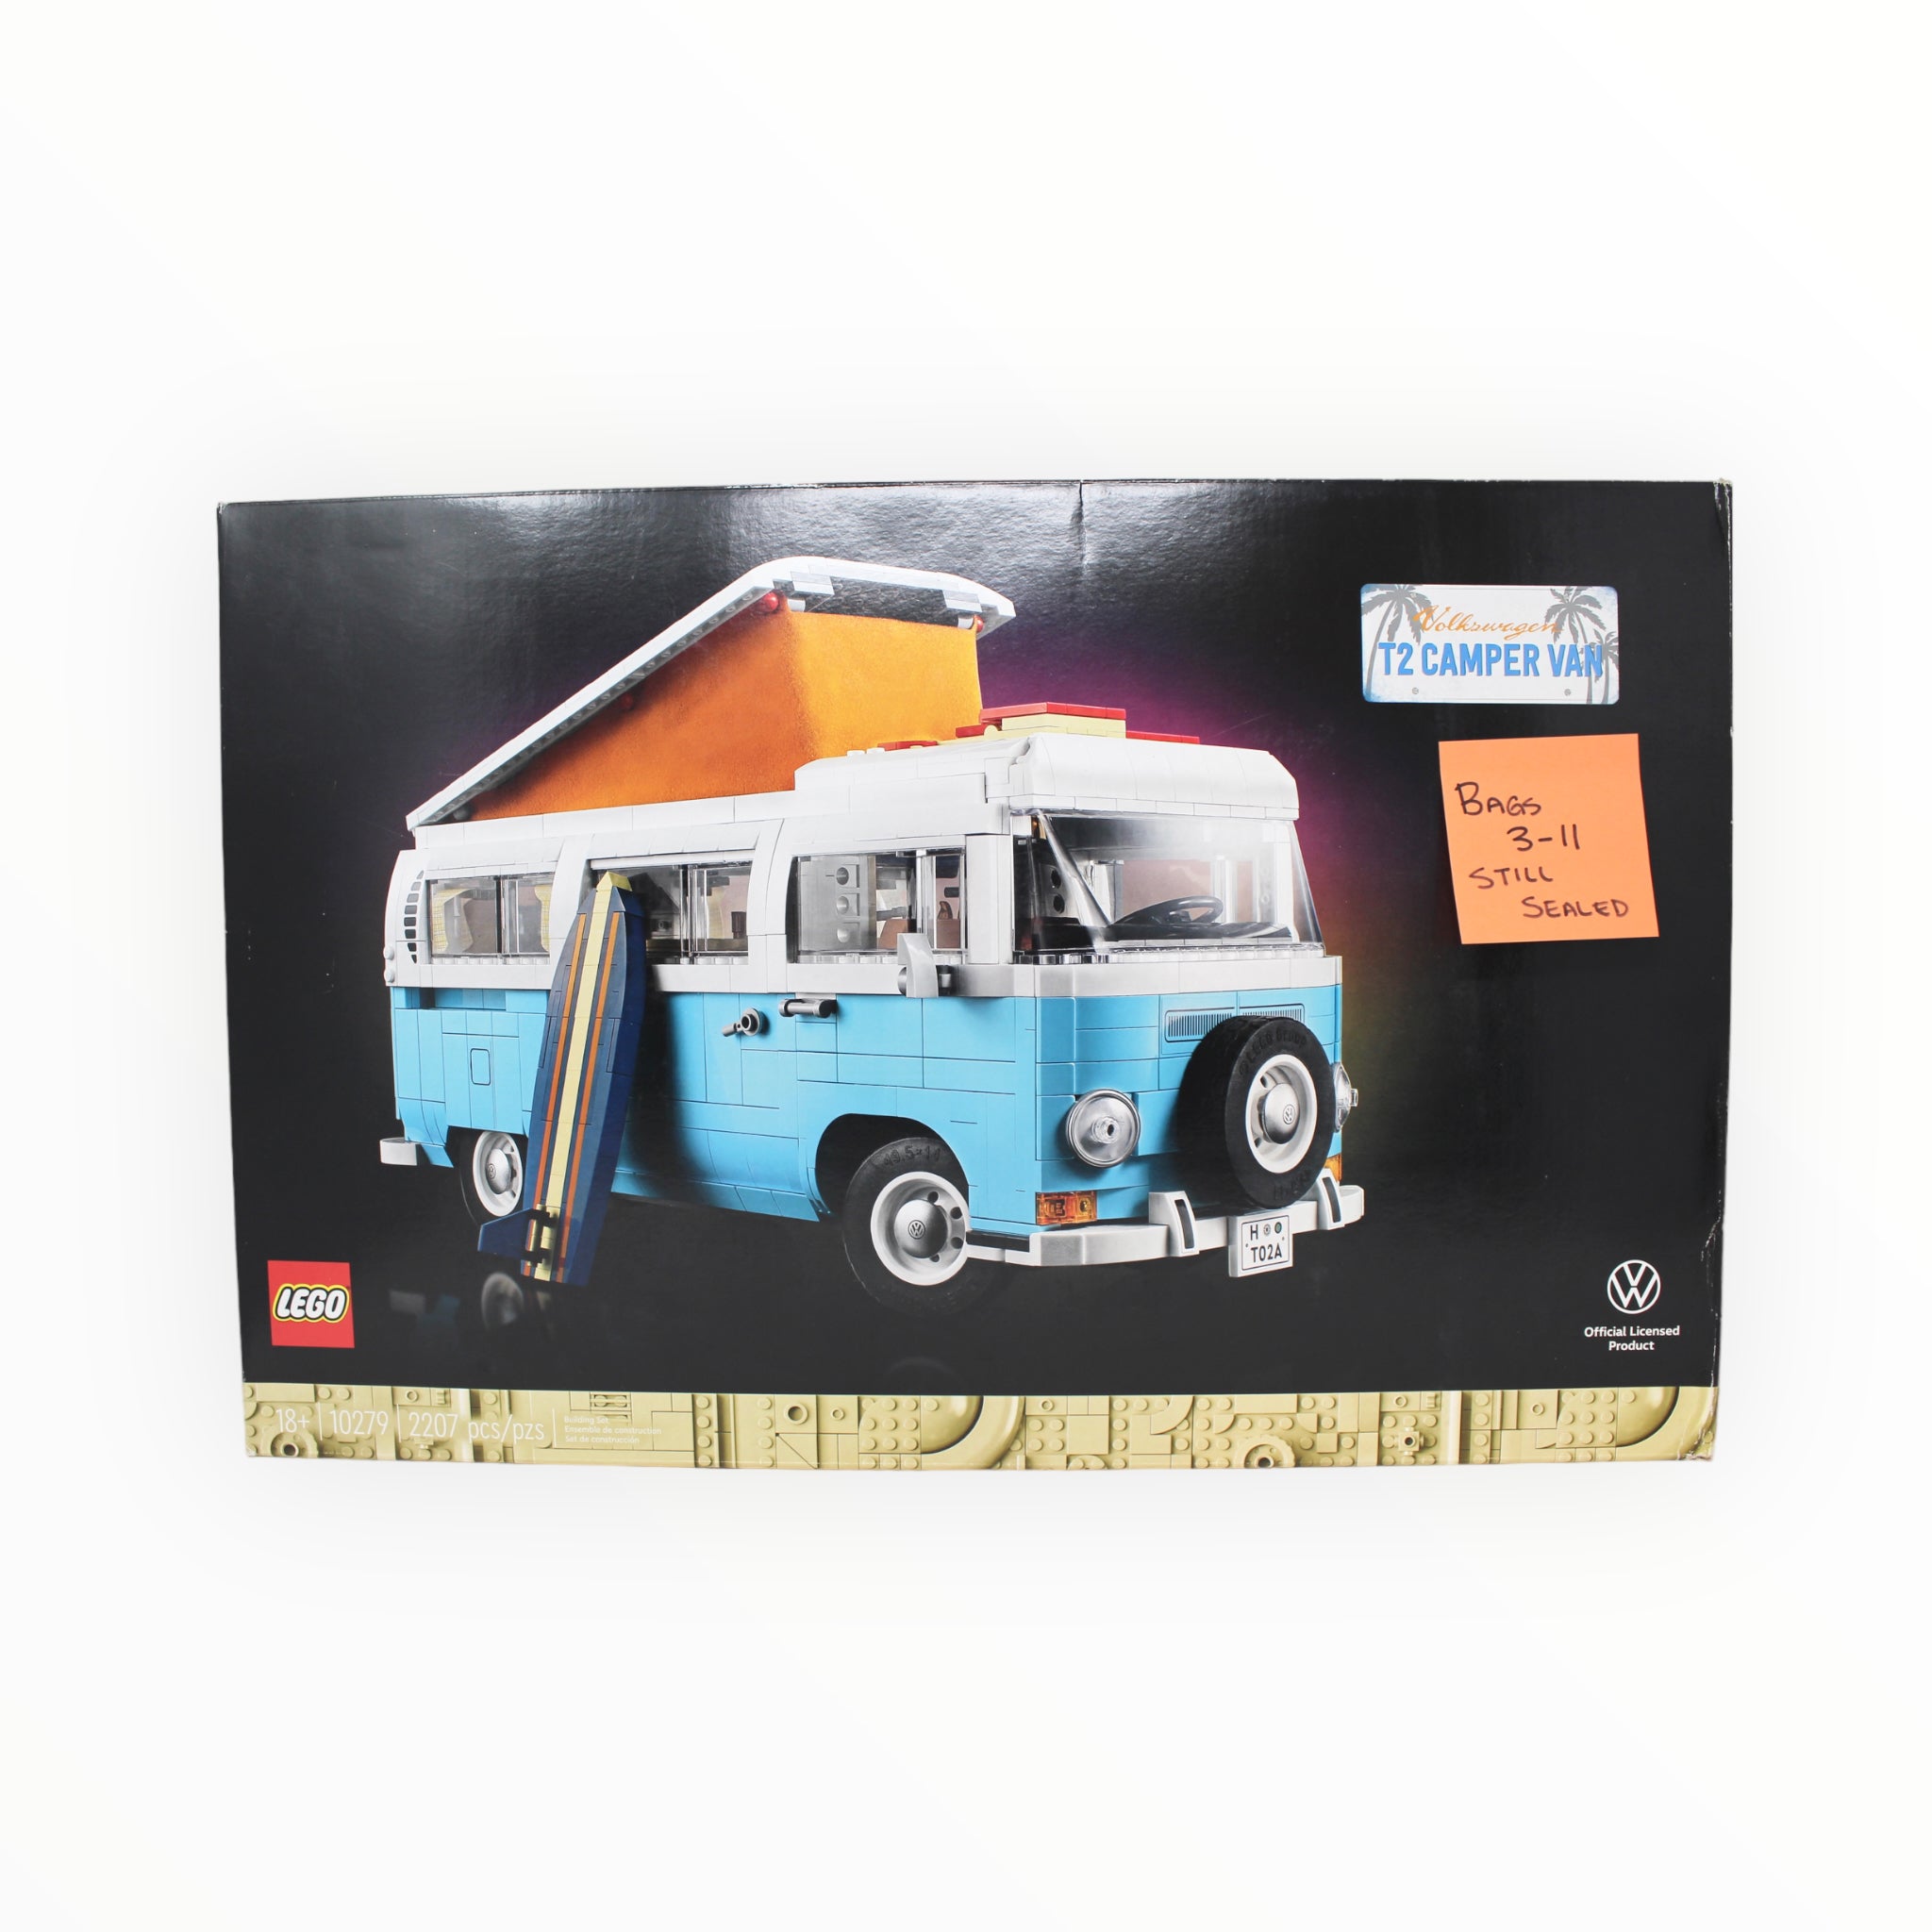 Certified Used Set 10279 Creator Volkswagen T2 Camper Van (bags 3-11 still sealed)